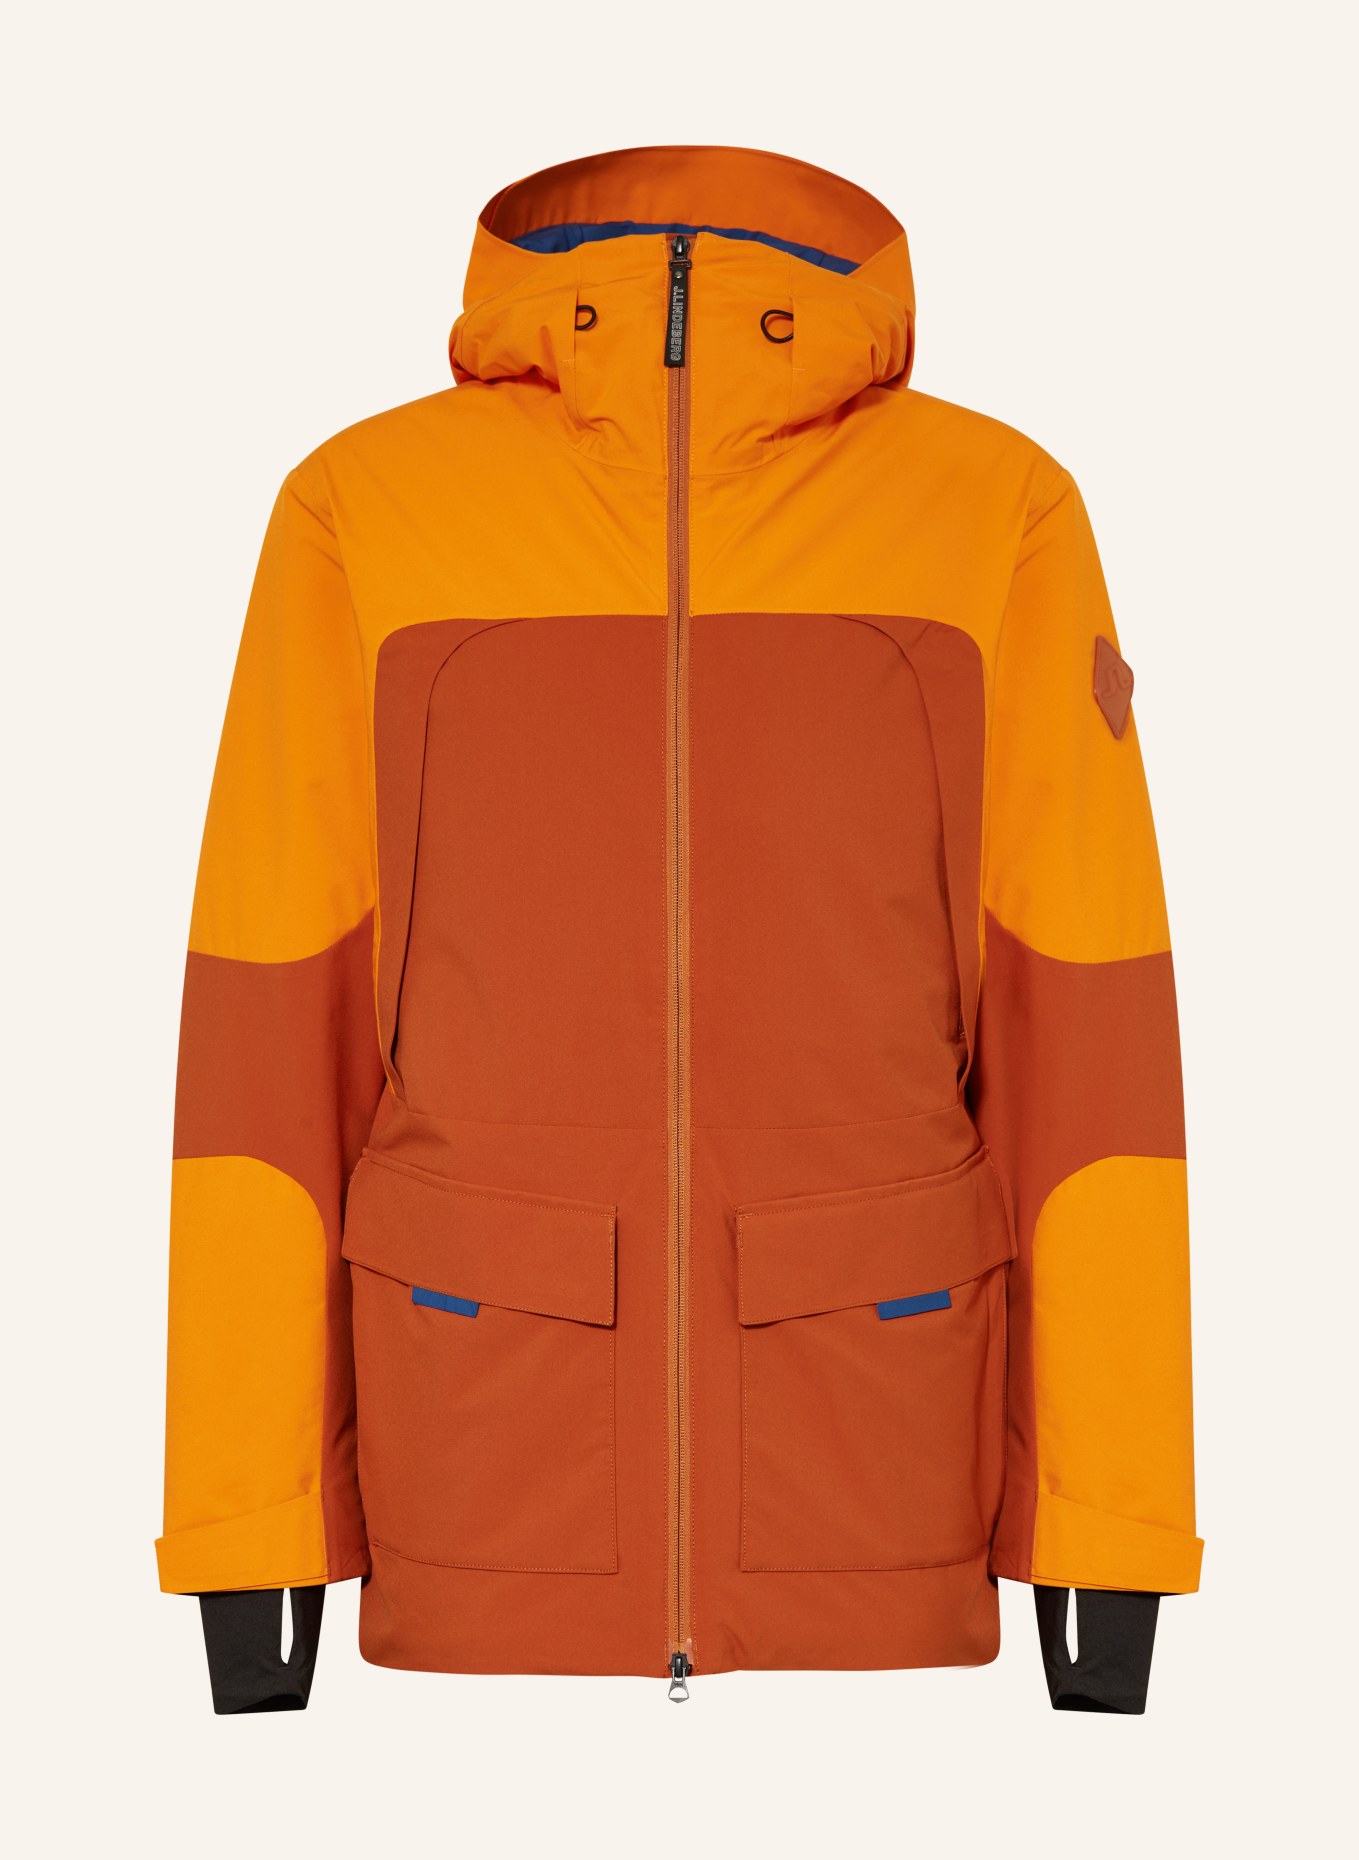 dark jacket orange/ Ski J.LINDEBERG in blue orange/